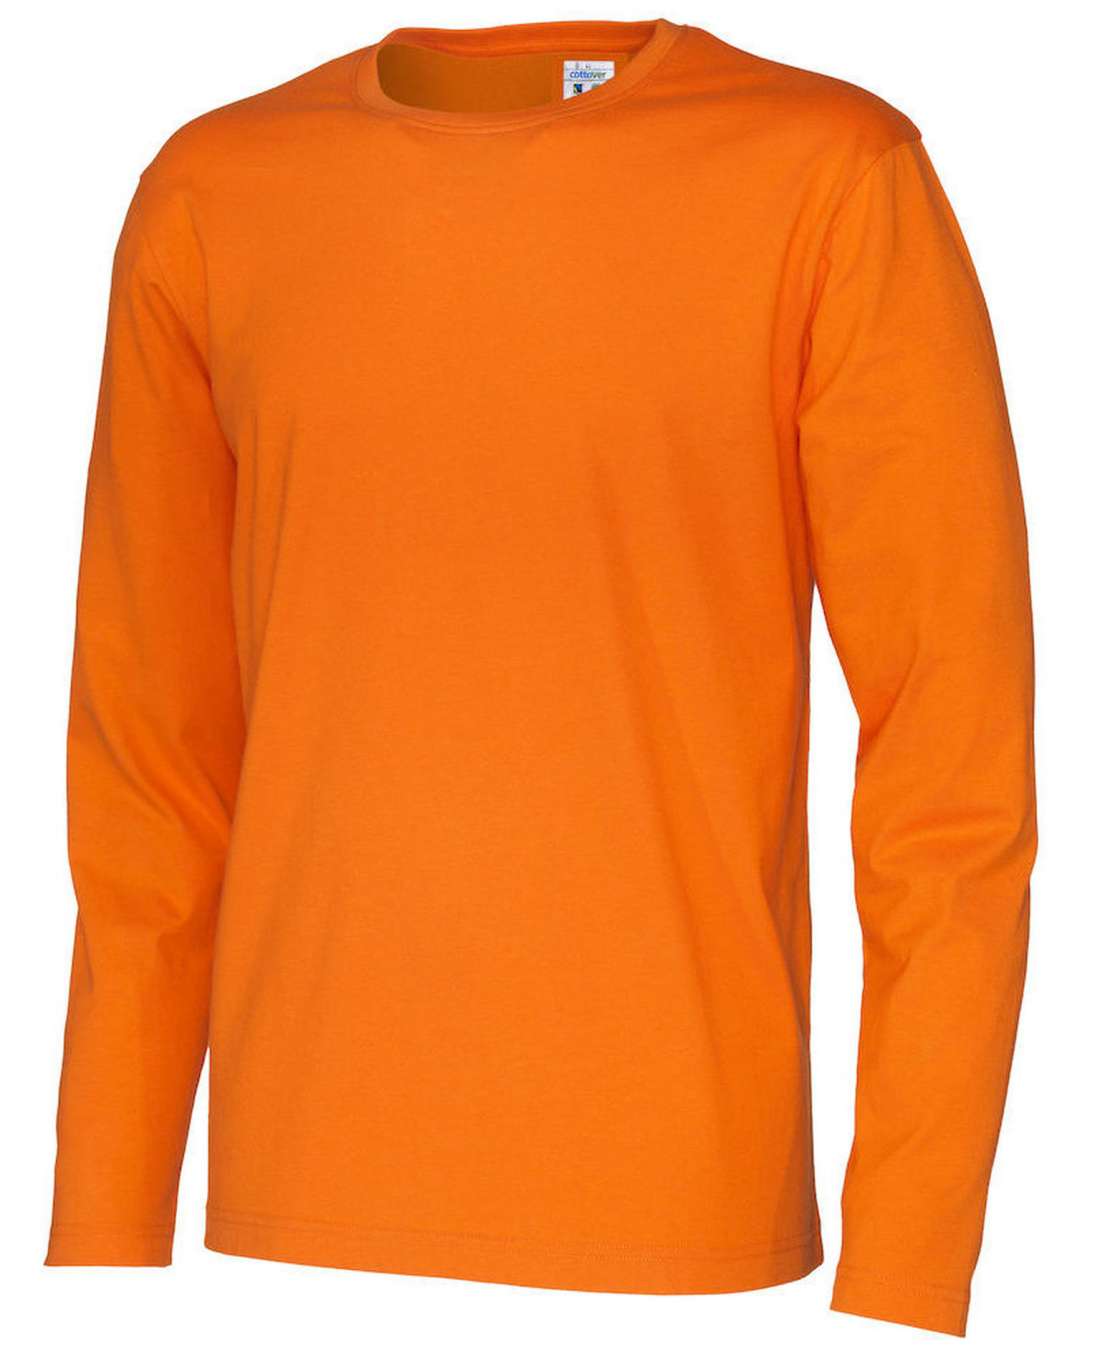 Cottover Miesten pitkähihainen T-paita, Oranssi